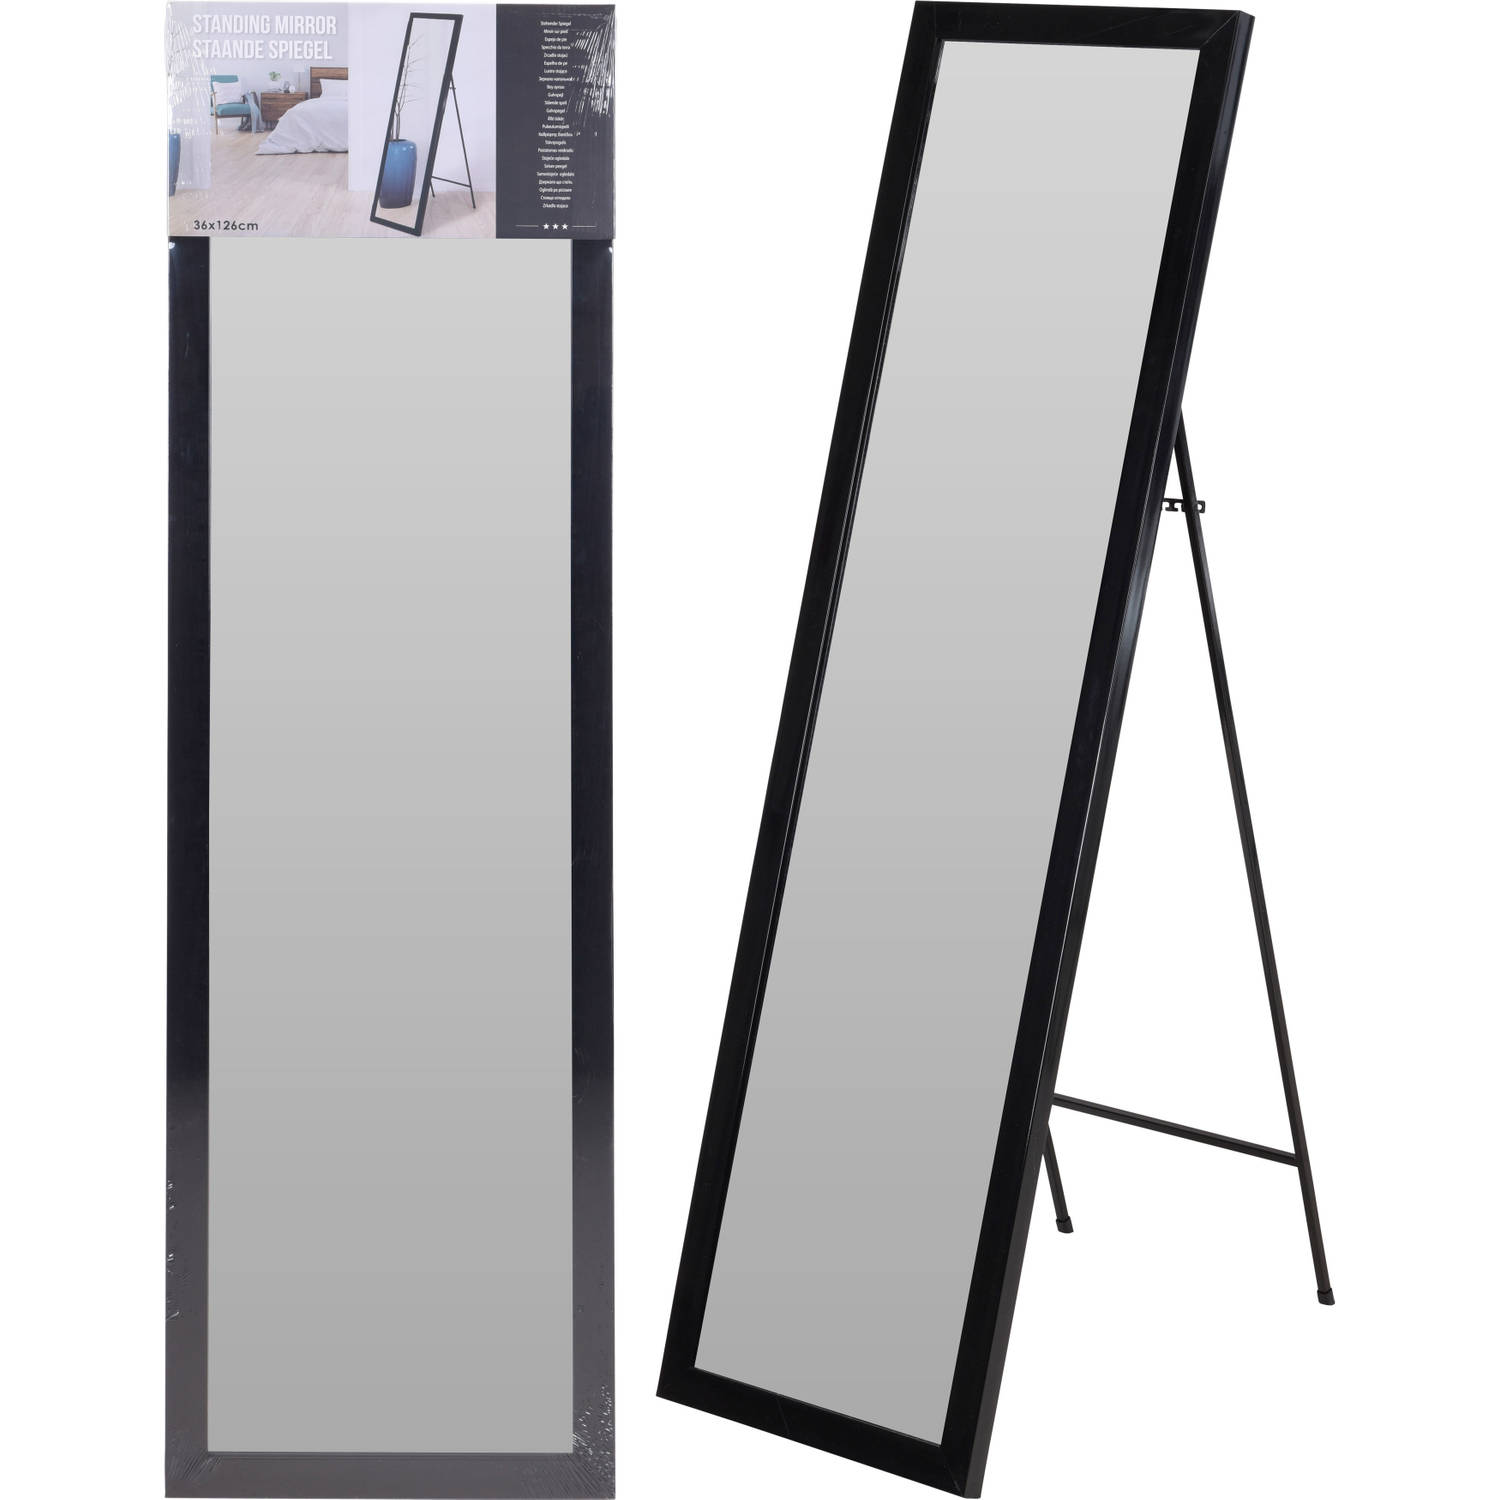 spiegel staand 36x126cm | Blokker